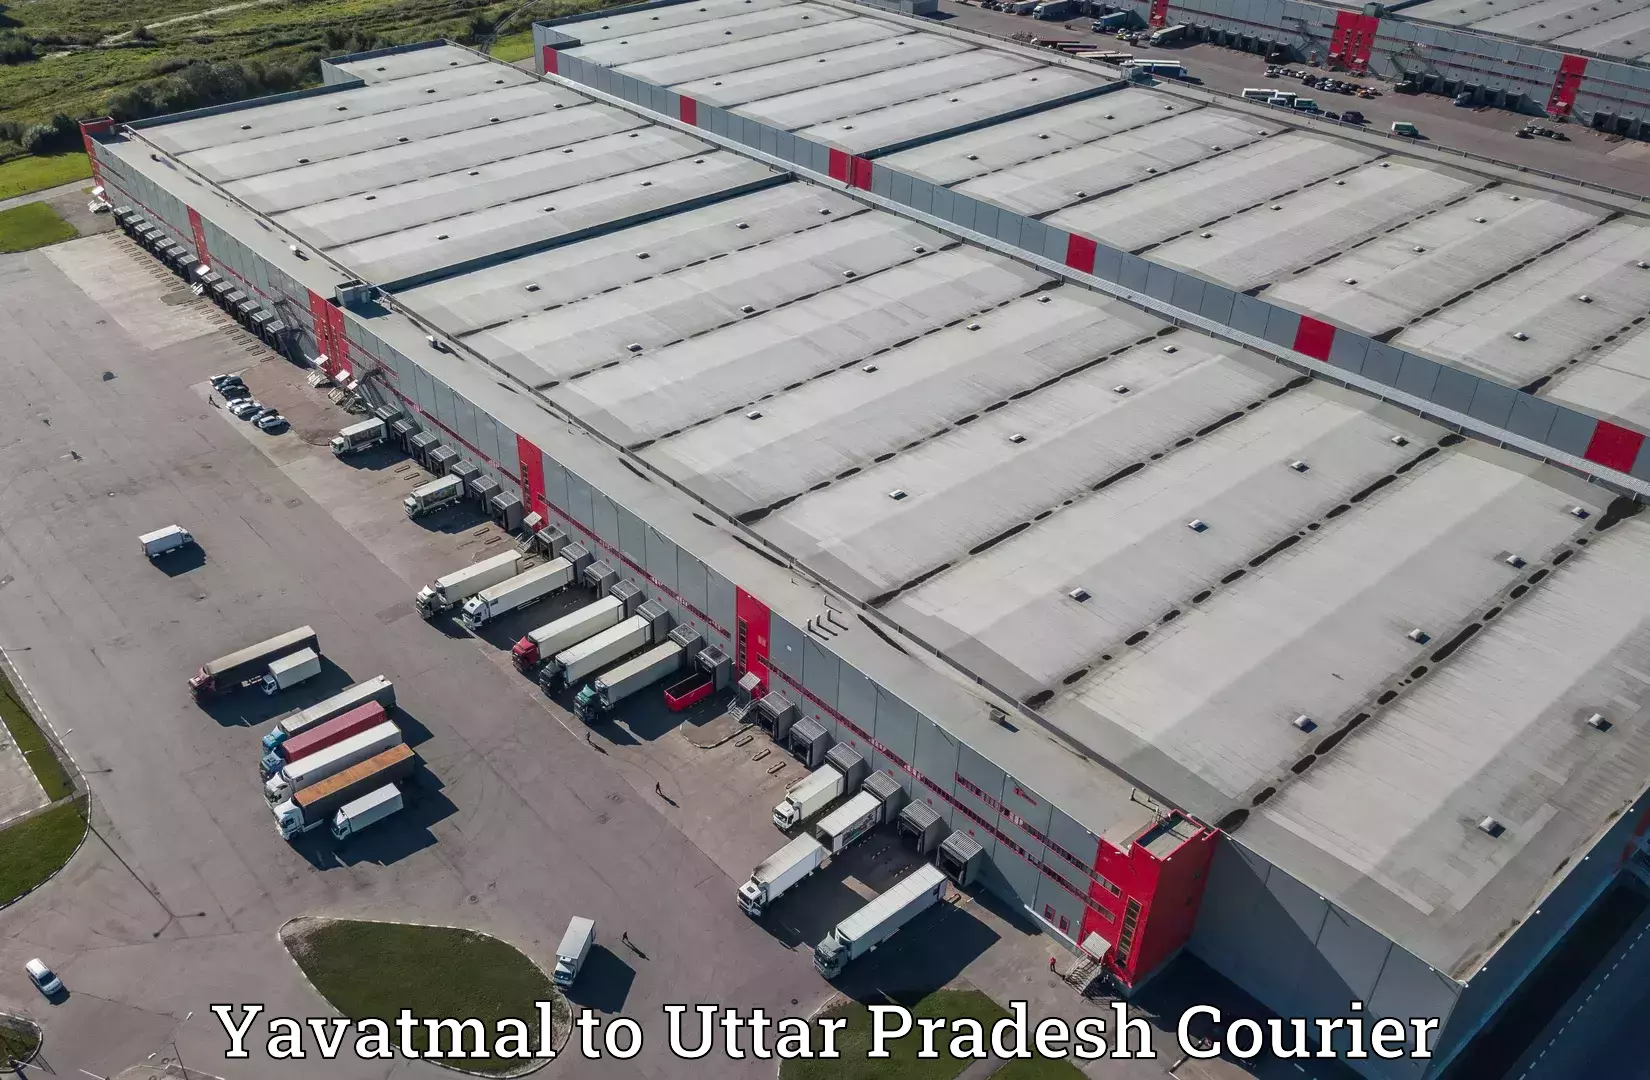 High-capacity parcel service Yavatmal to Anupshahar